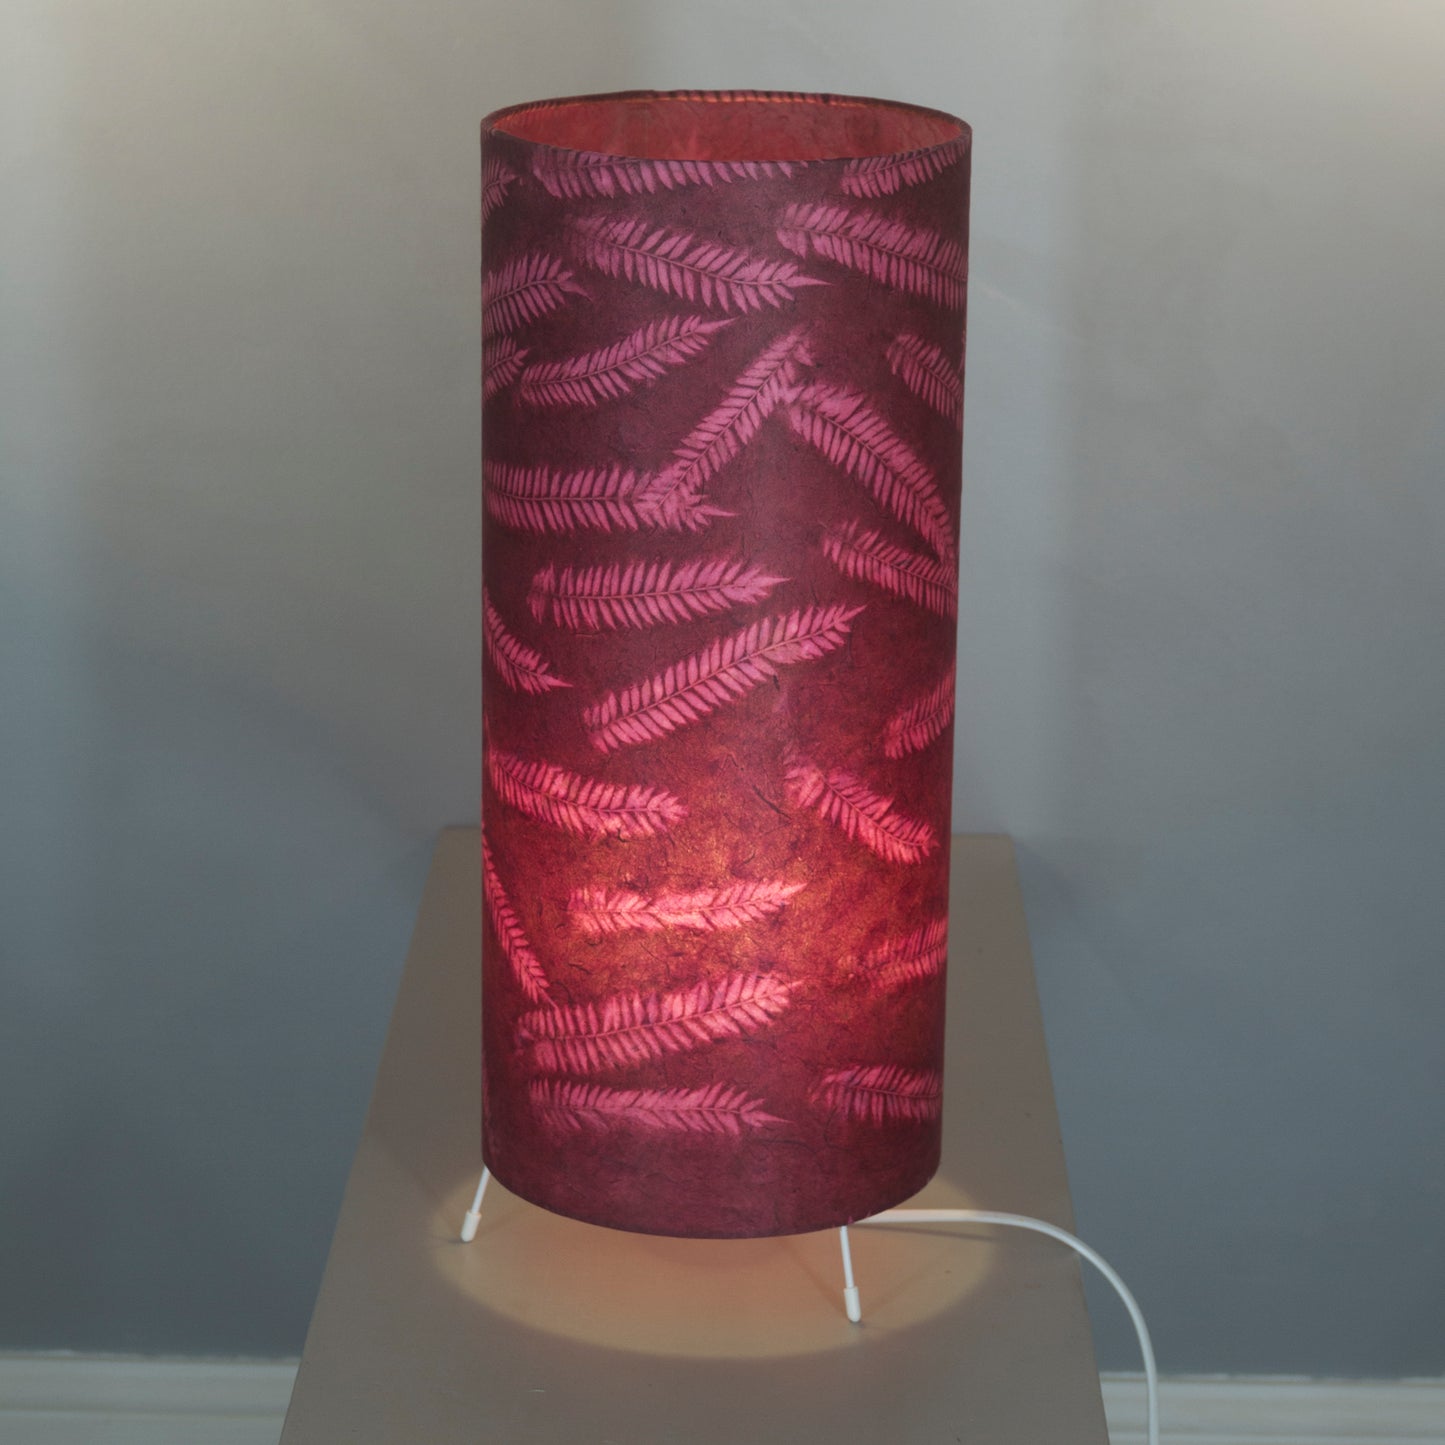 Oak Tripod Floor Lamp - P25 - Resistance Dyed Pink Fern